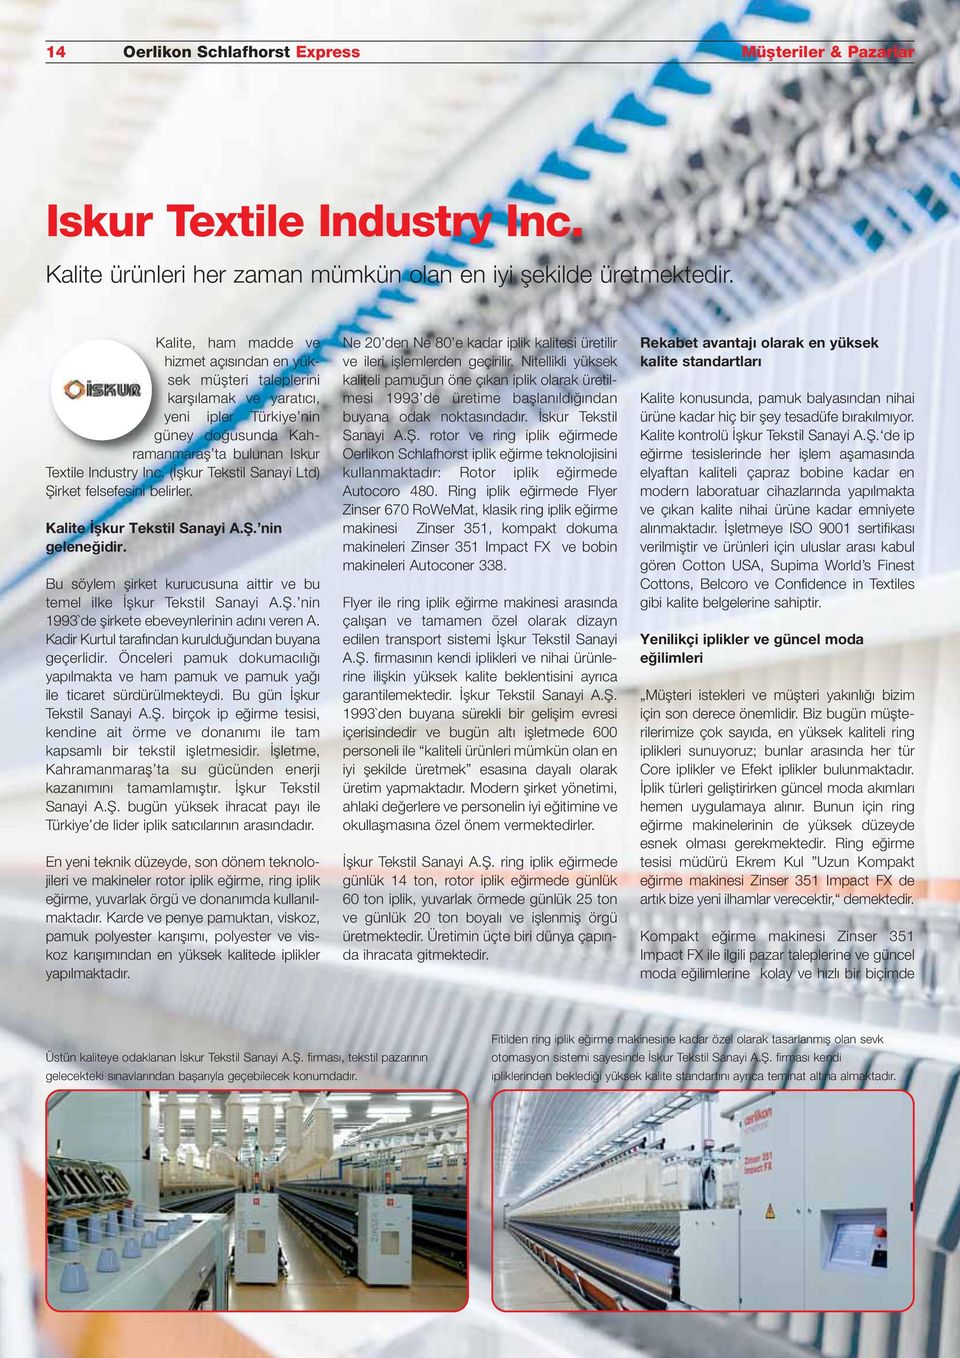 (İşkur Tekstil Sanayi Ltd) Şirket felsefesini belirler. Kalite İşkur Tekstil Sanayi A.Ş. nin geleneğidir. Bu söylem şirket kurucusuna aittir ve bu temel ilke İşkur Tekstil Sanayi A.Ş. nin 1993`de şirkete ebeveynlerinin adını veren A.